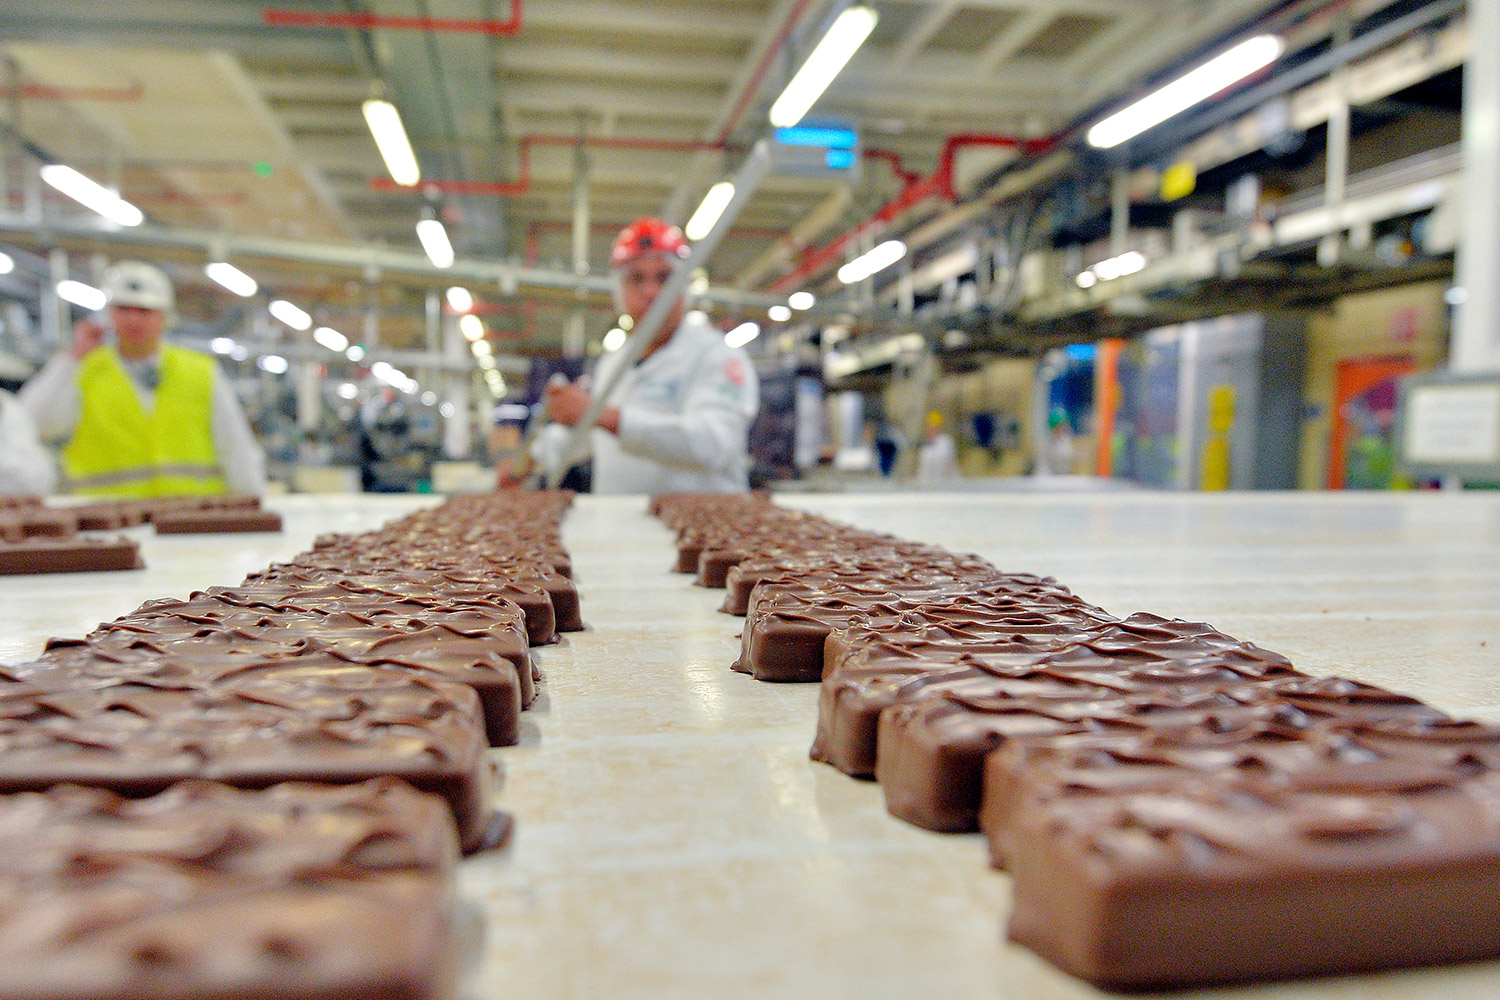 Mars anuncia la retirada masiva de sus barritas de chocolate en 55 países, entre ellos, España